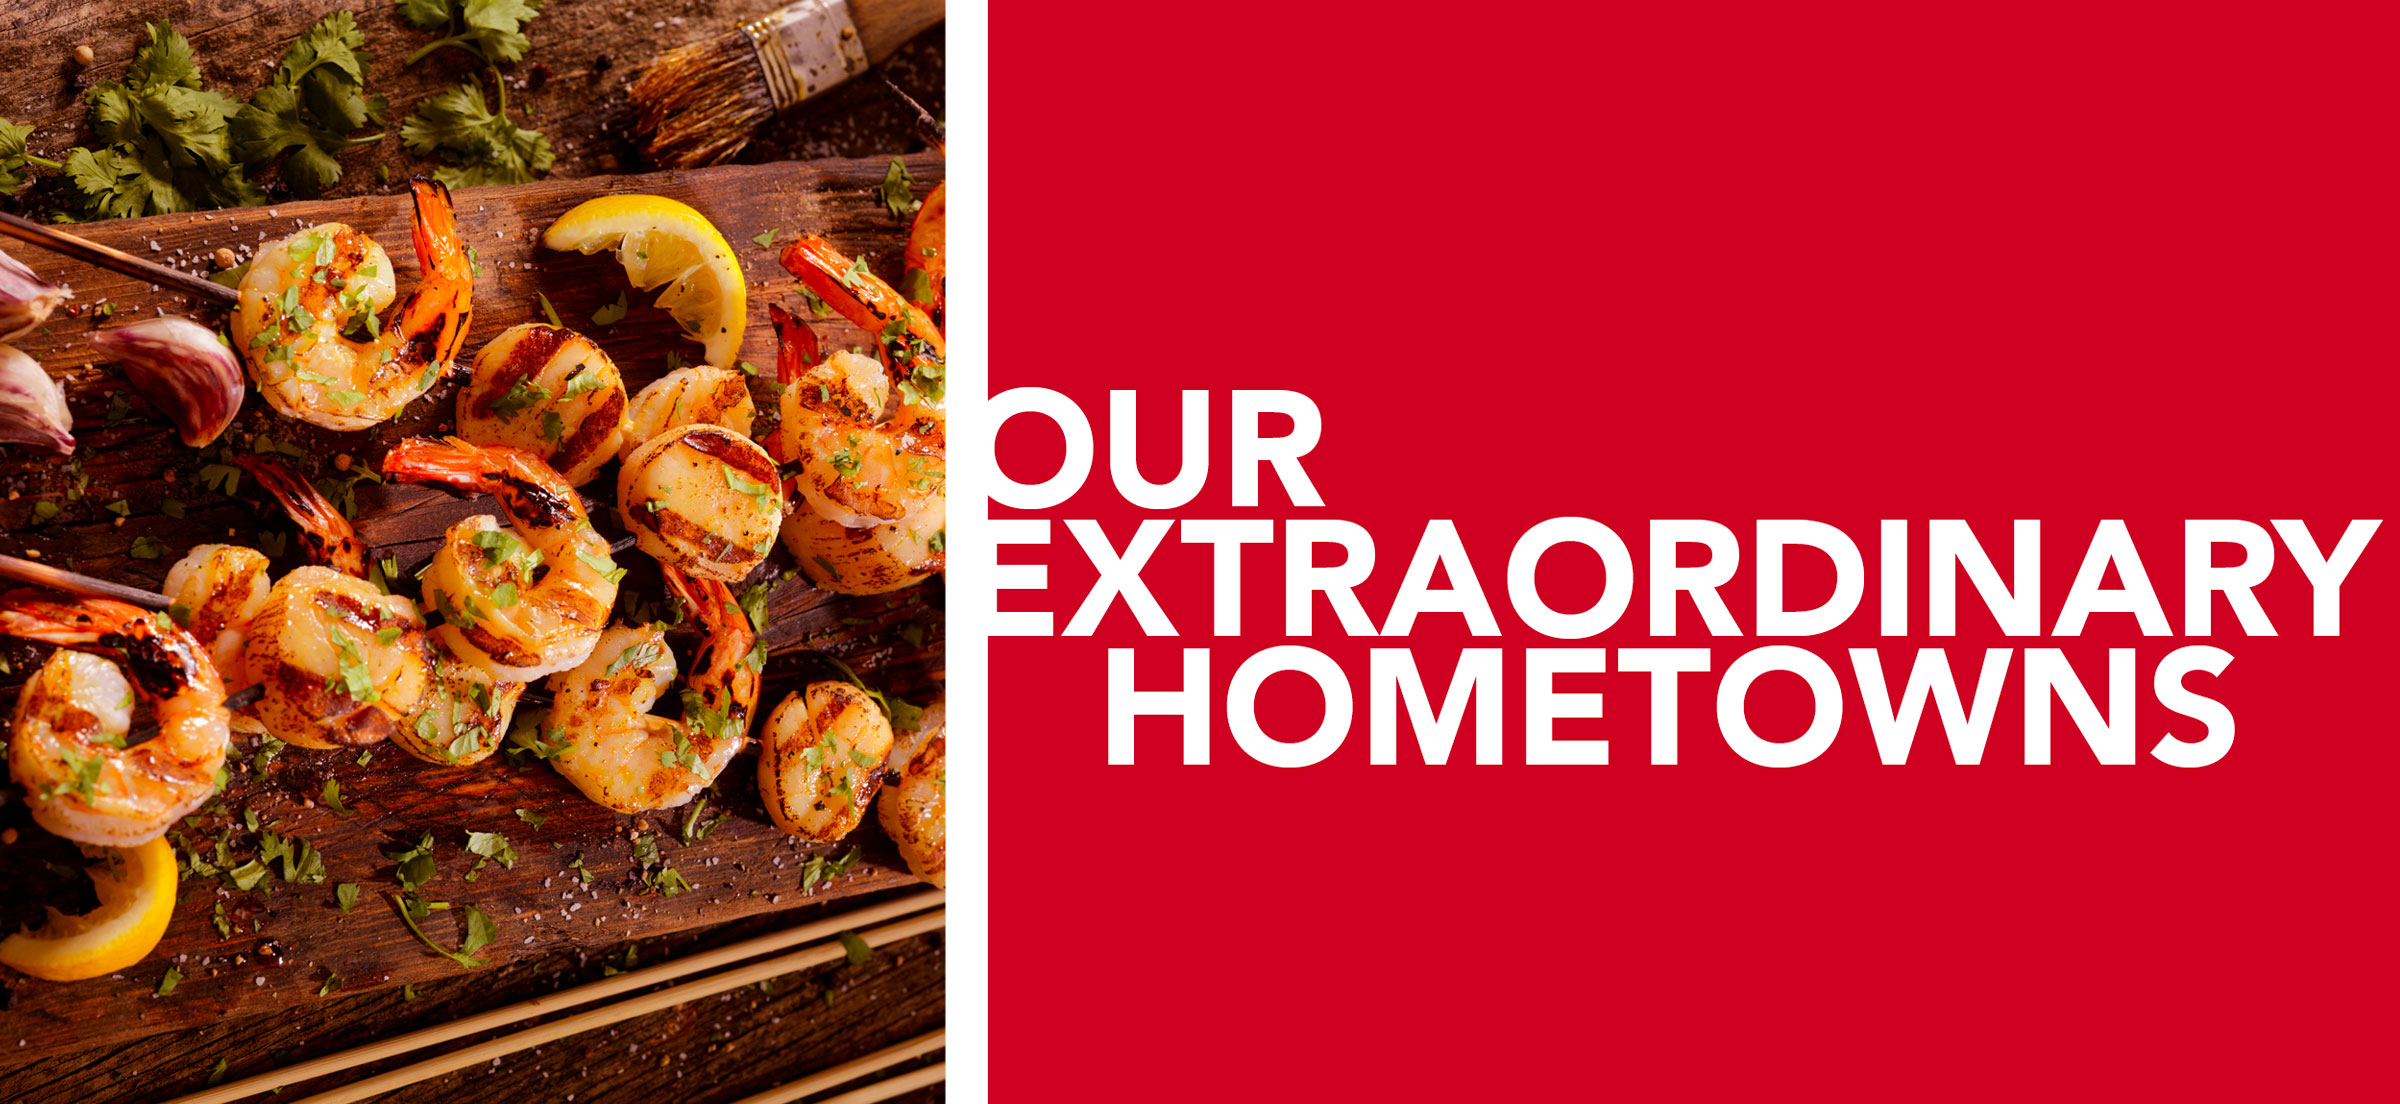 BBQ shrimp - Our Extraordinary Hometowns.